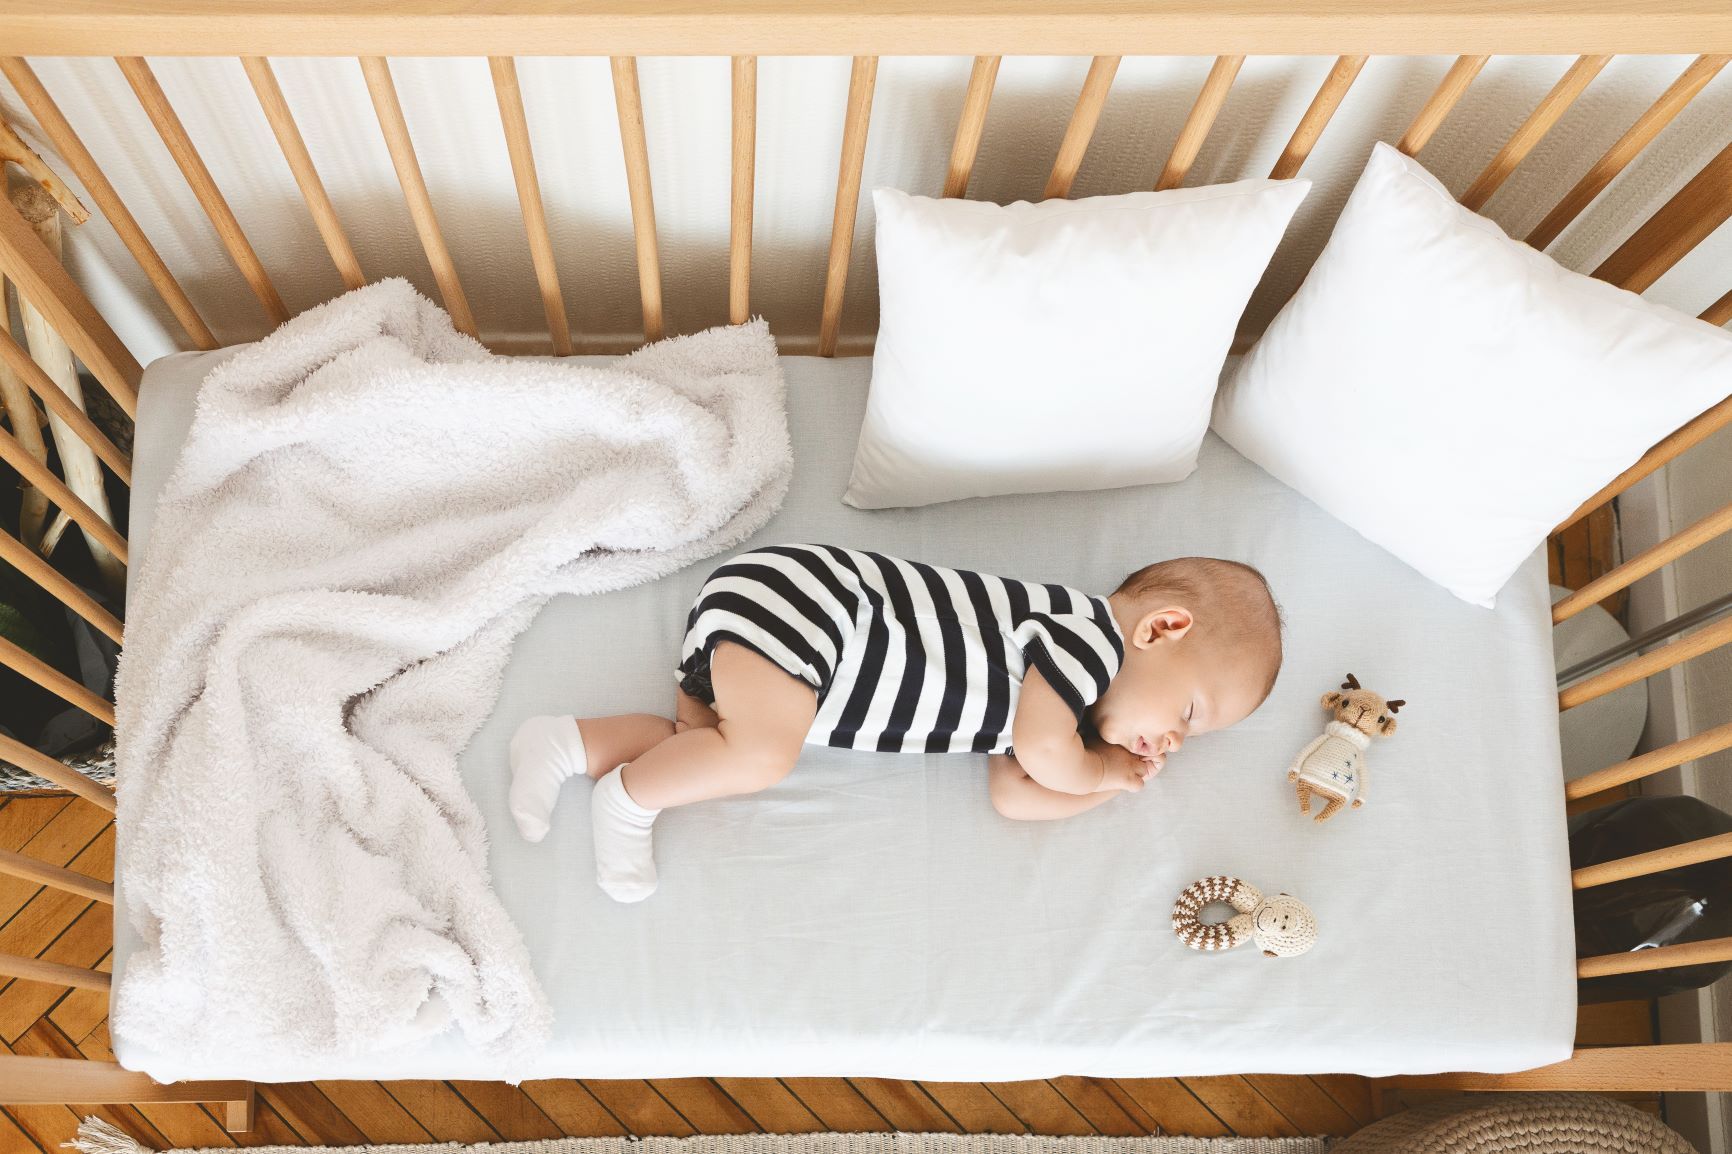 Come scegliere il lettino per il neonato? Ecco alcuni consigli - Uppa